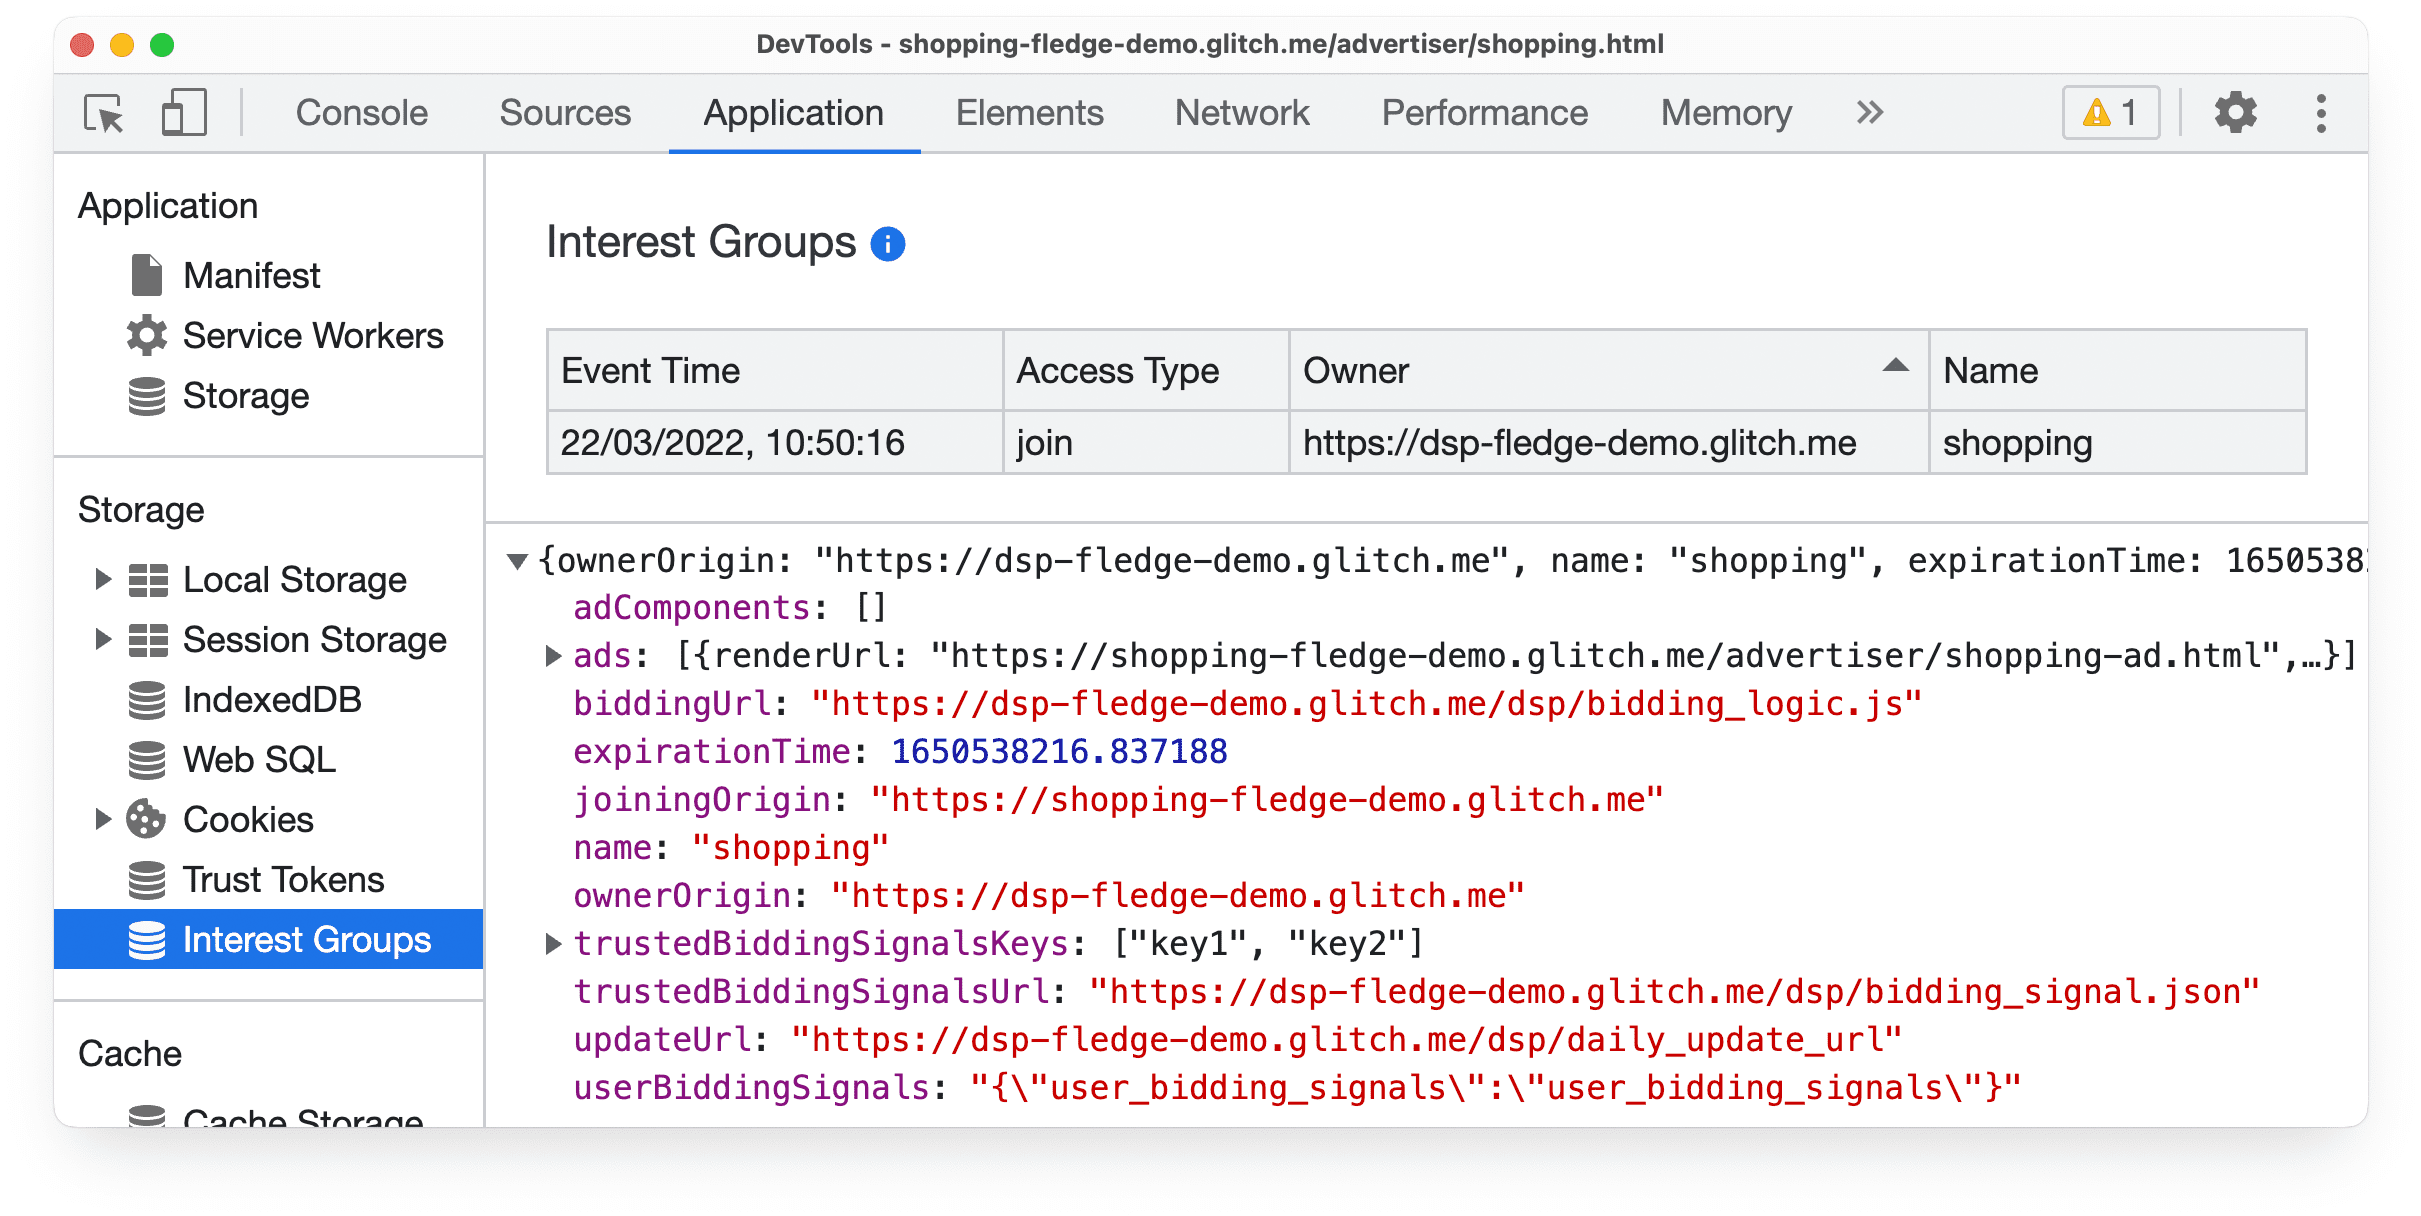 DevTools ऐप्लिकेशन पैनल, Protected Audience API इंटरेस्ट ग्रुप जॉइन इवेंट के बारे में जानकारी दिखाता है.